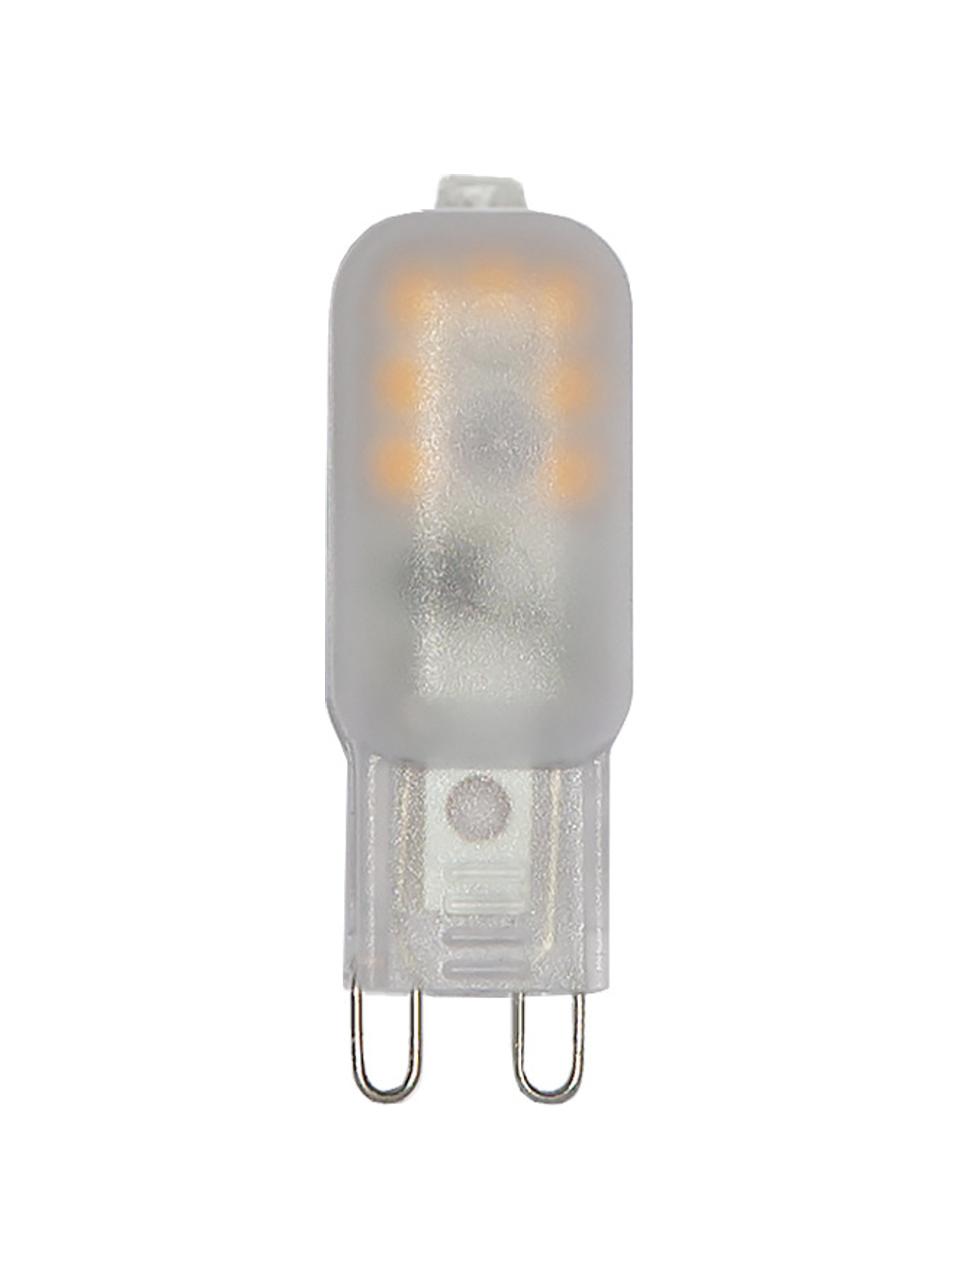 G9 Leuchtmittel, dimmbar, warmweiß, 1 Stück, Leuchtmittelschirm: Kunststoff, Leuchtmittelfassung: Kunststoff, Weiß, semi-transparent, B 2 x H 5 cm